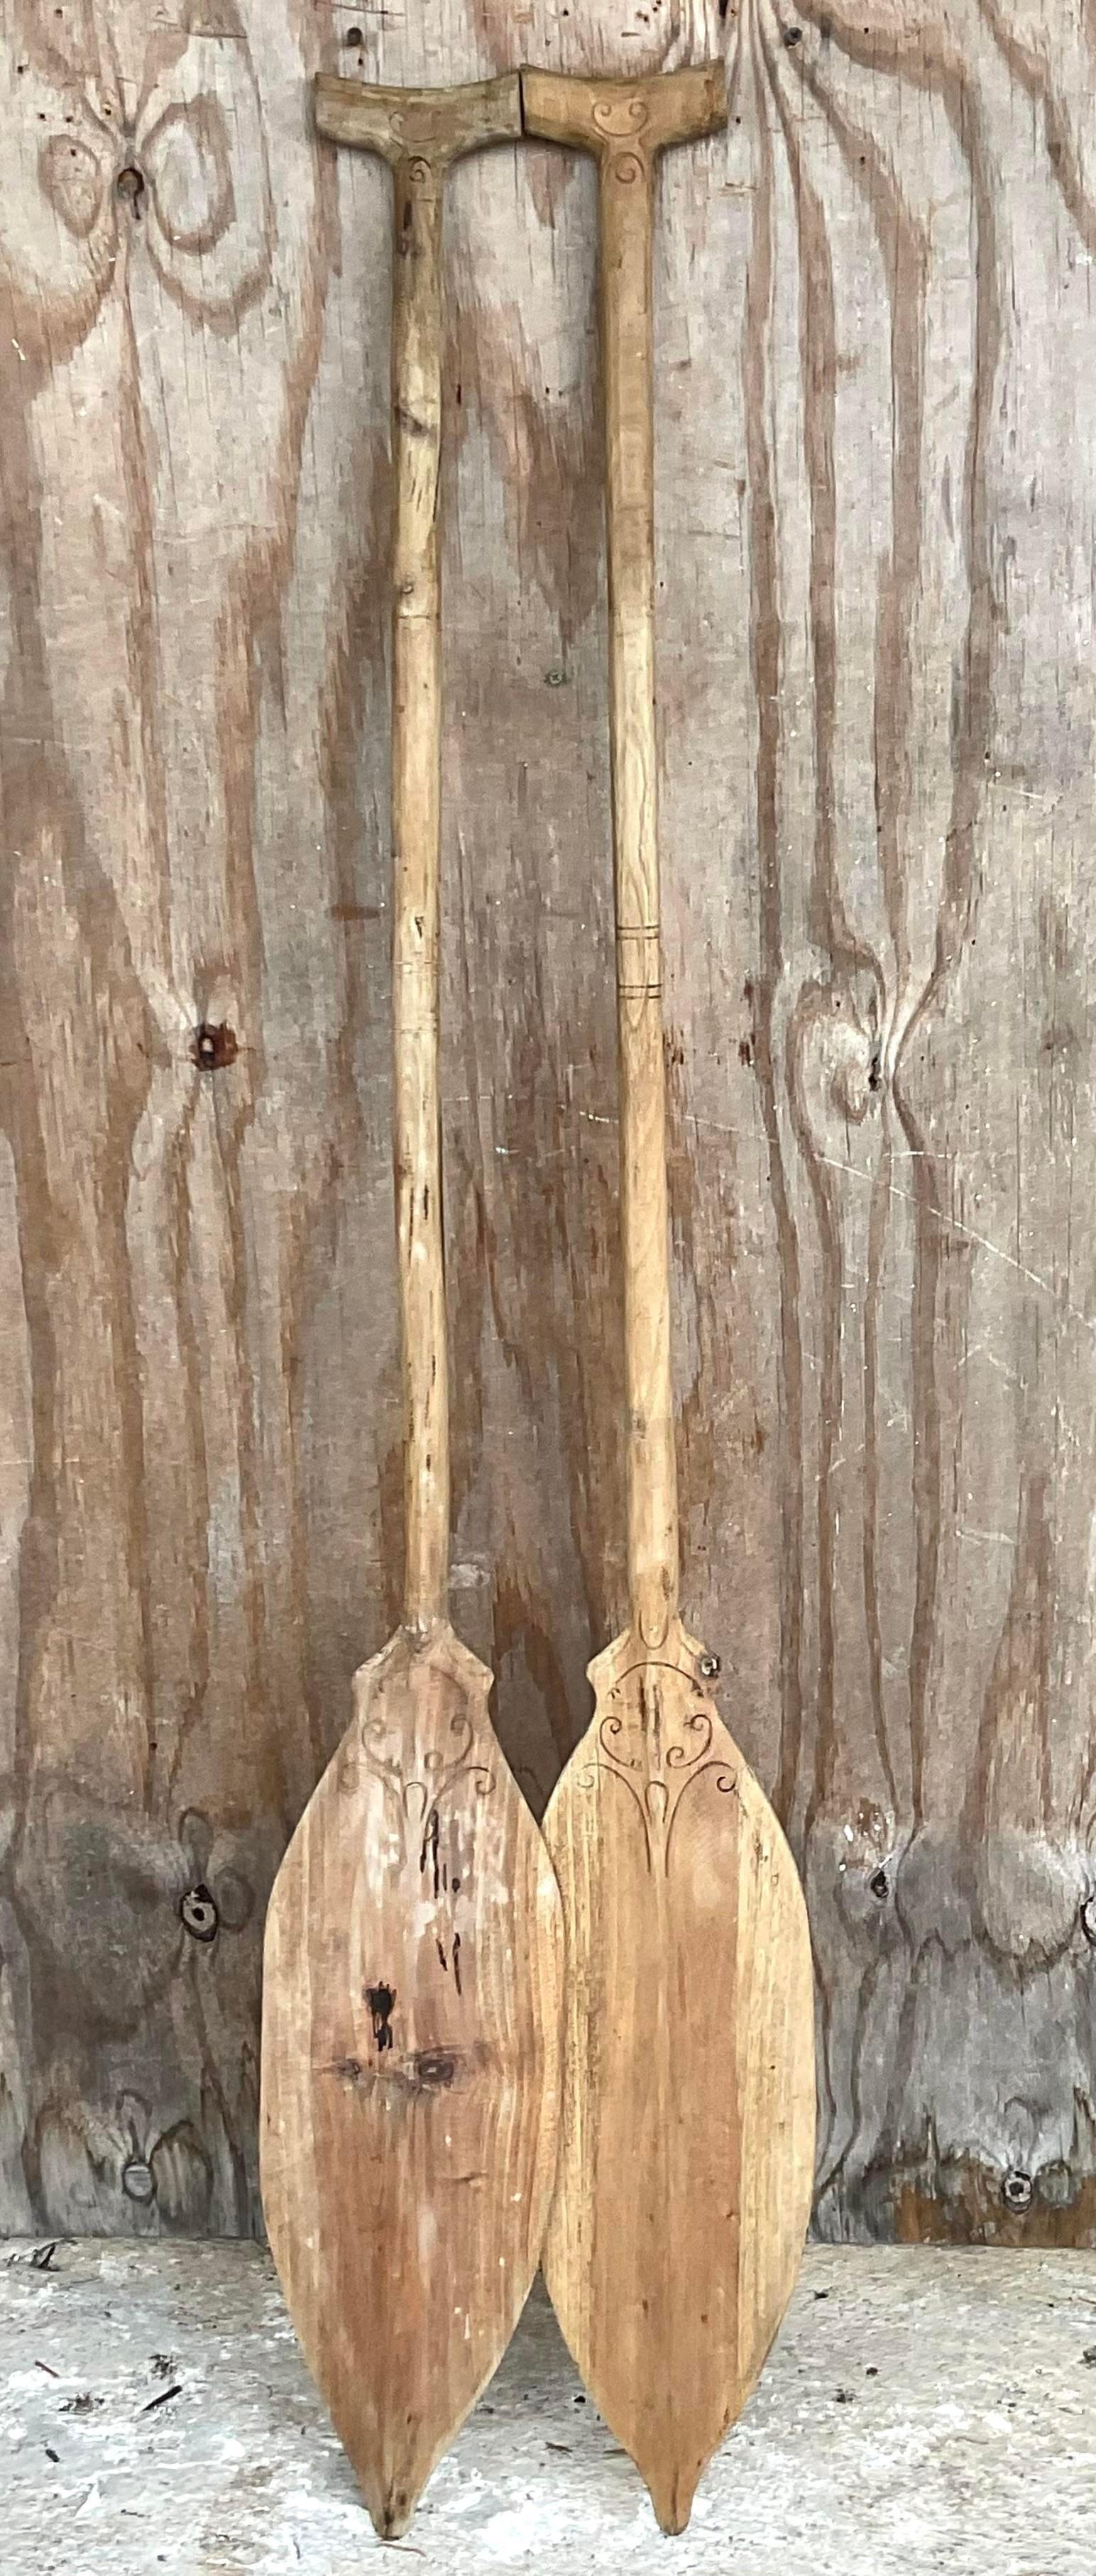 Philippin Pagaie vintage en bois sculpté - une paire